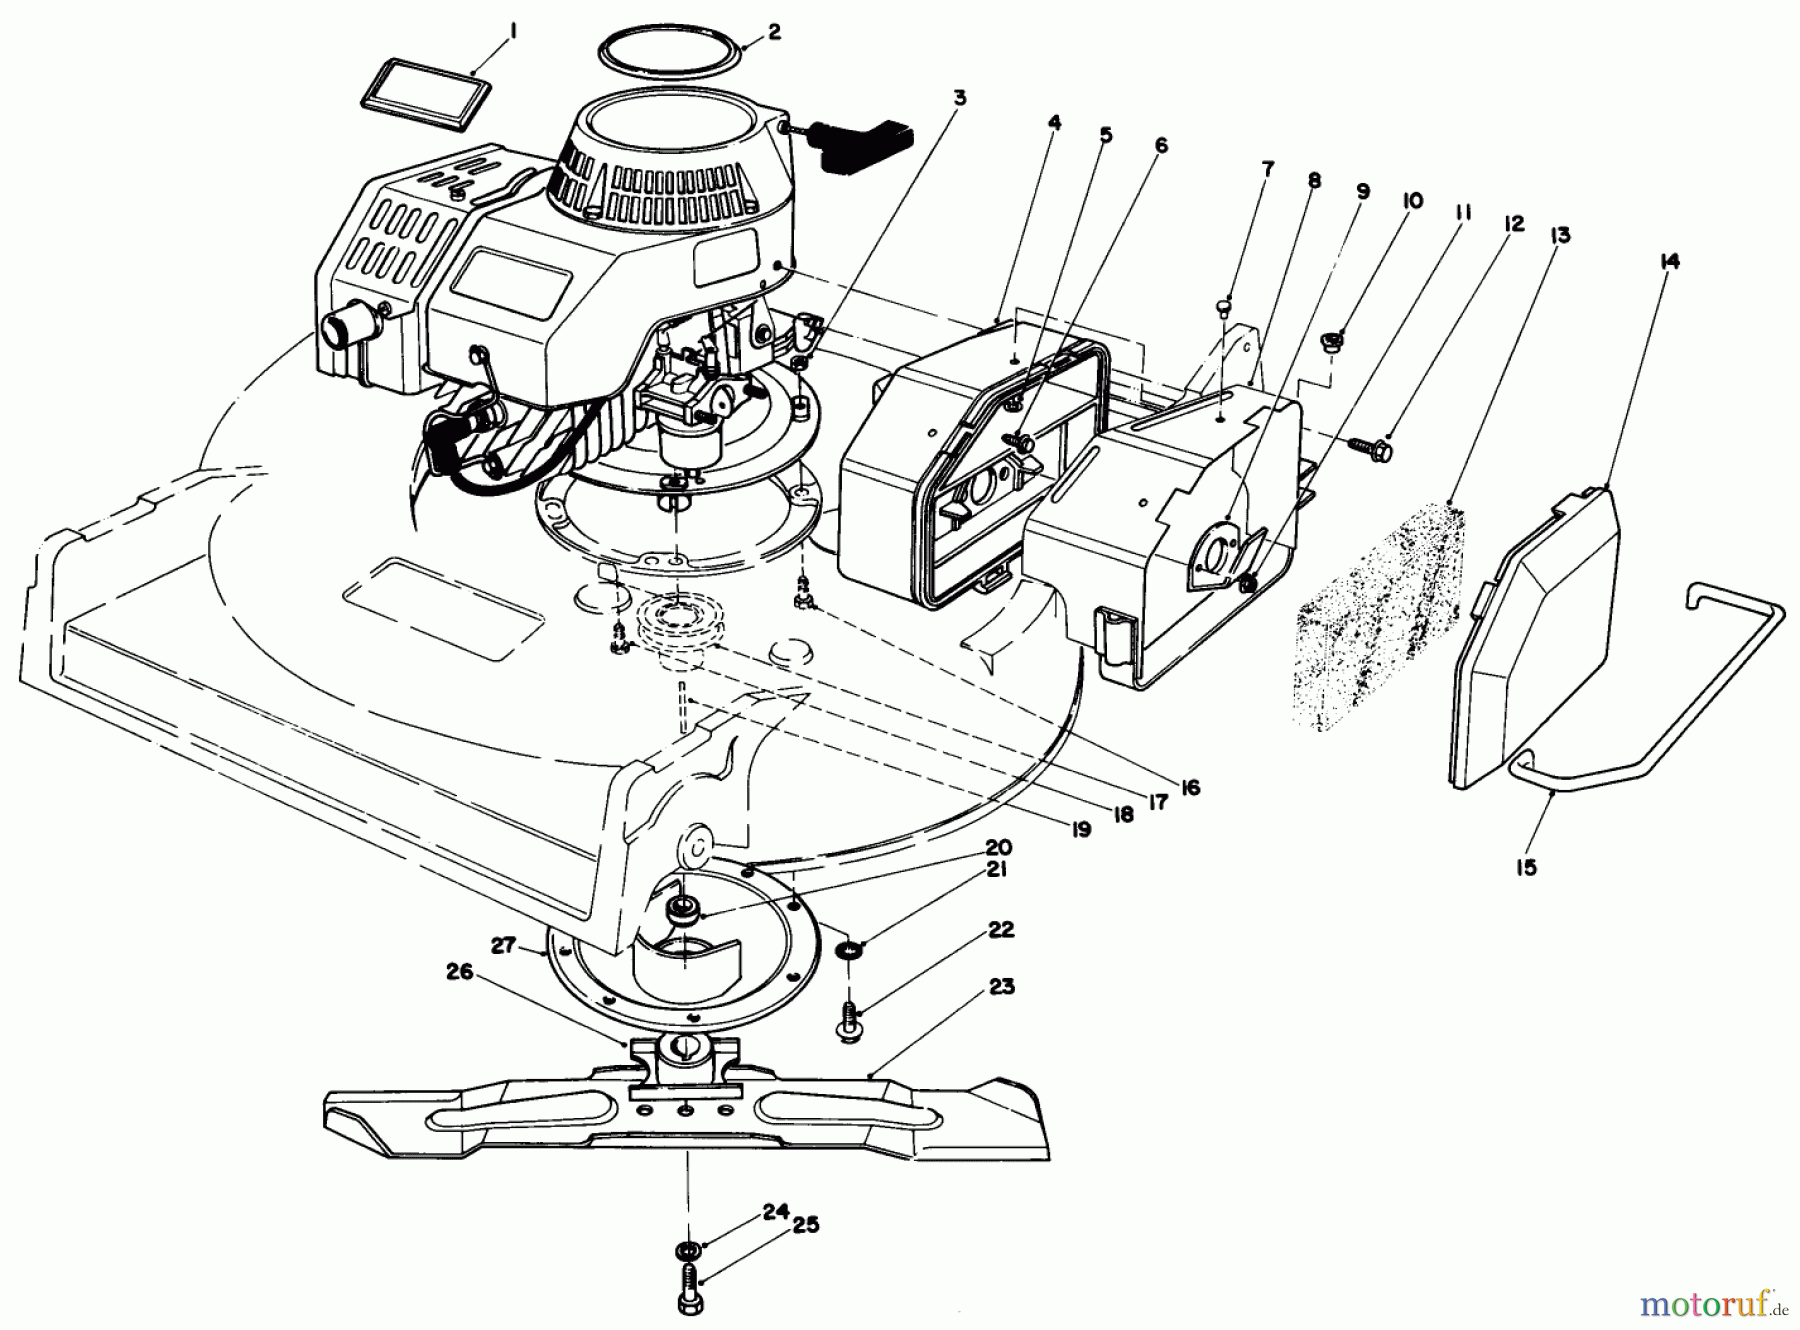  Toro Neu Mowers, Walk-Behind Seite 2 22035 - Toro Lawnmower, 1986 (6000001-6999999) ENGINE ASSEMBLY (MODEL 22035)